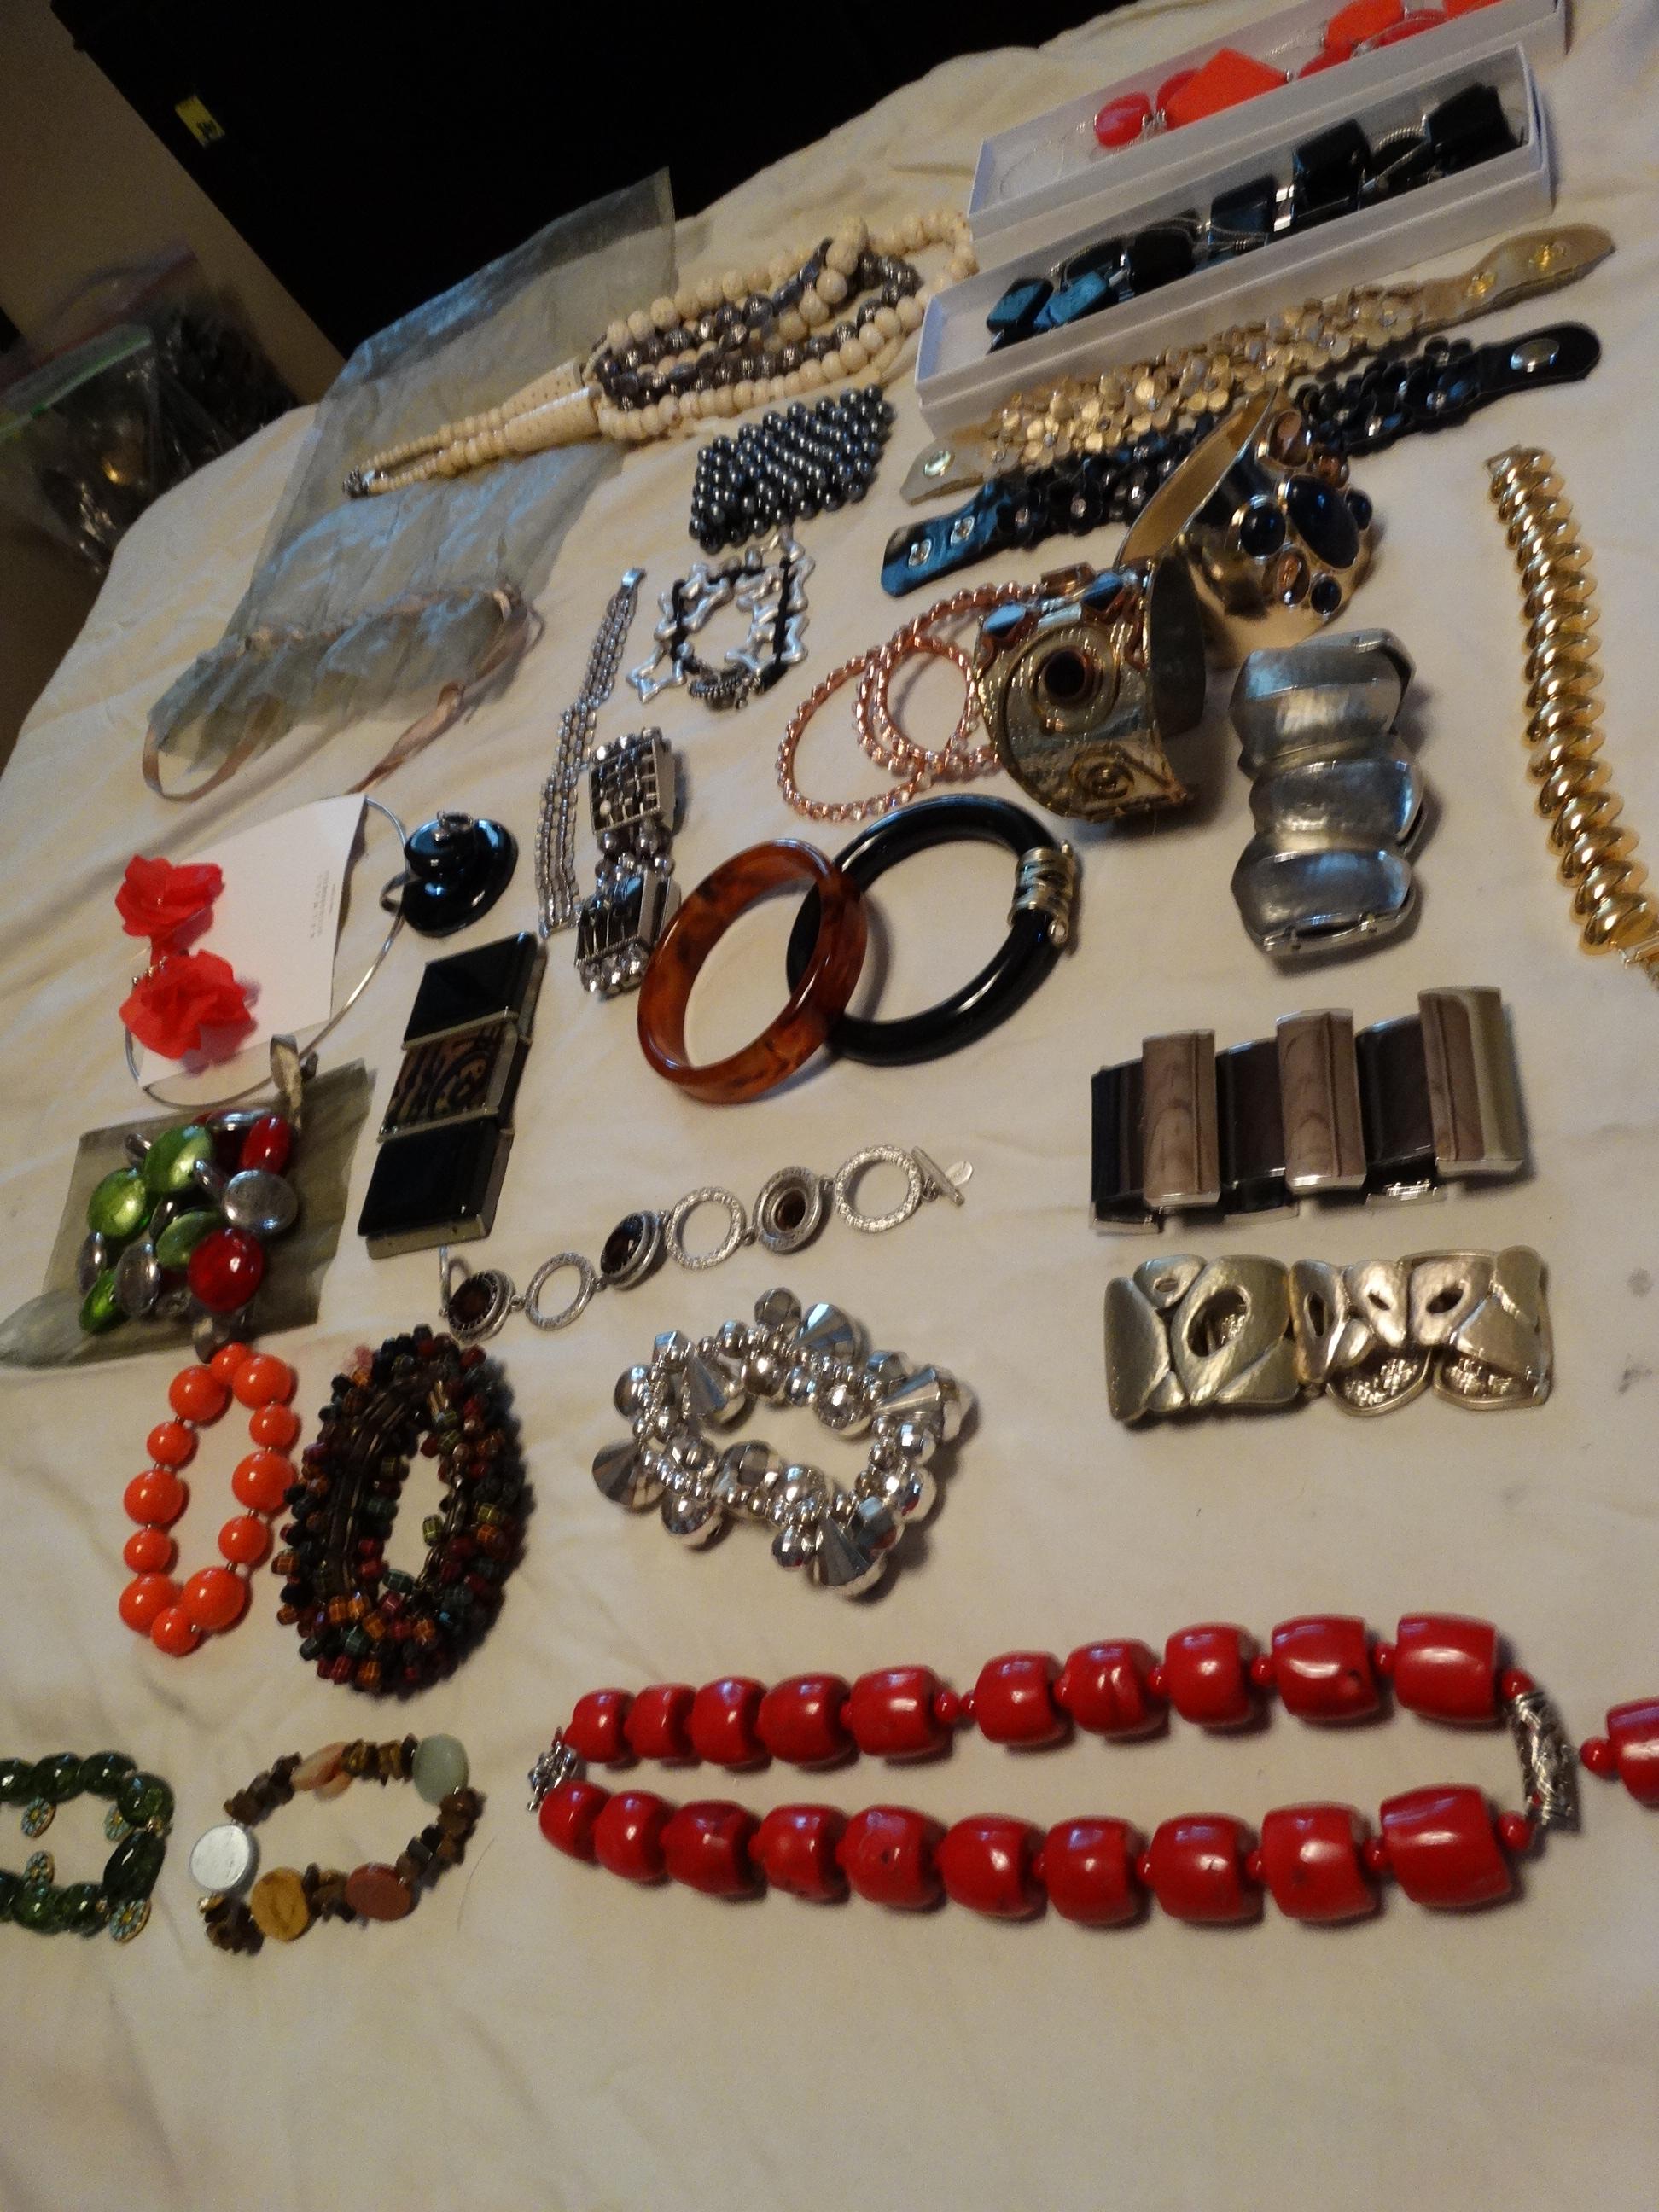 Costume Jewelry - Bracelets, bangles